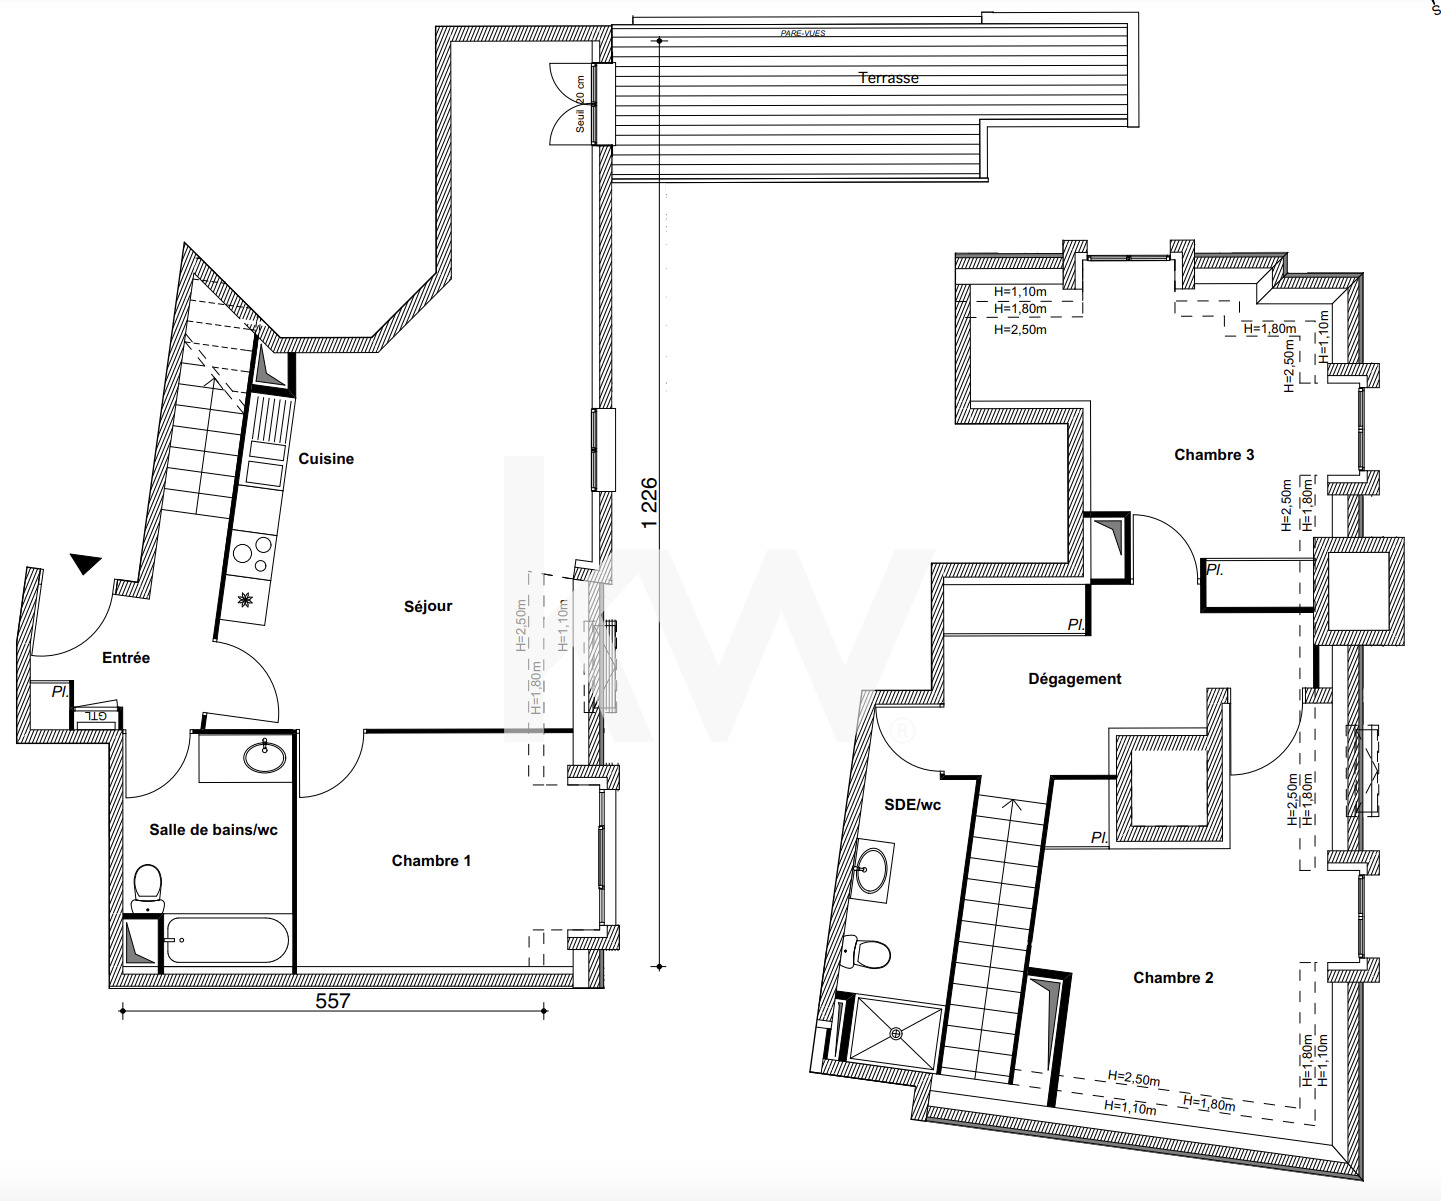 VENTE d'un appartement 4 pièces (99 m²) au BLANC MESNIL